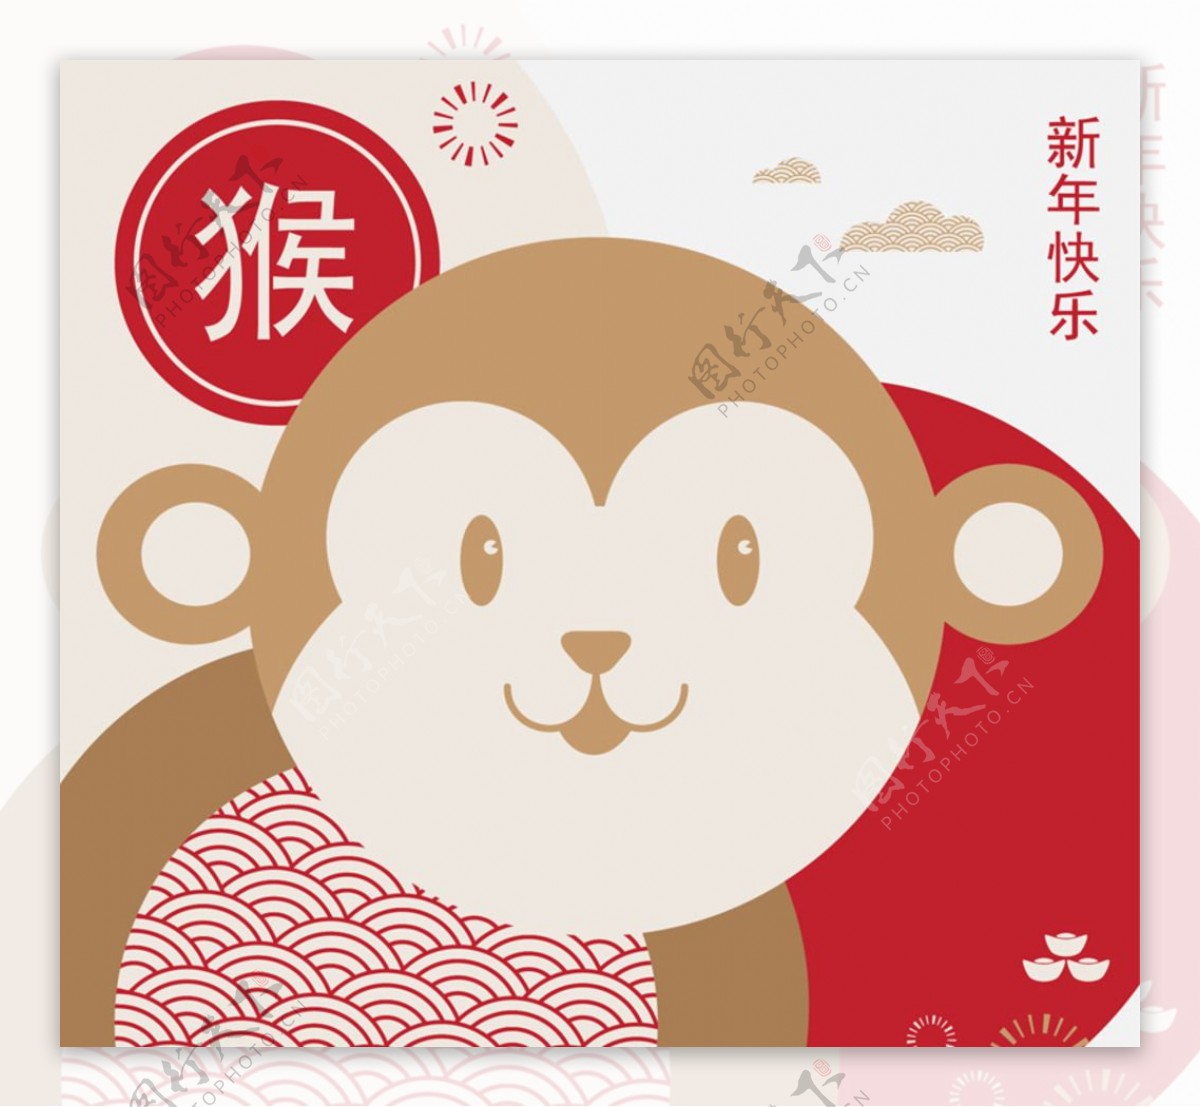 中国新年 2016 年庆祝活动的猴子设计模板免费下载_eps格式_314像素_编号42444006-千图网